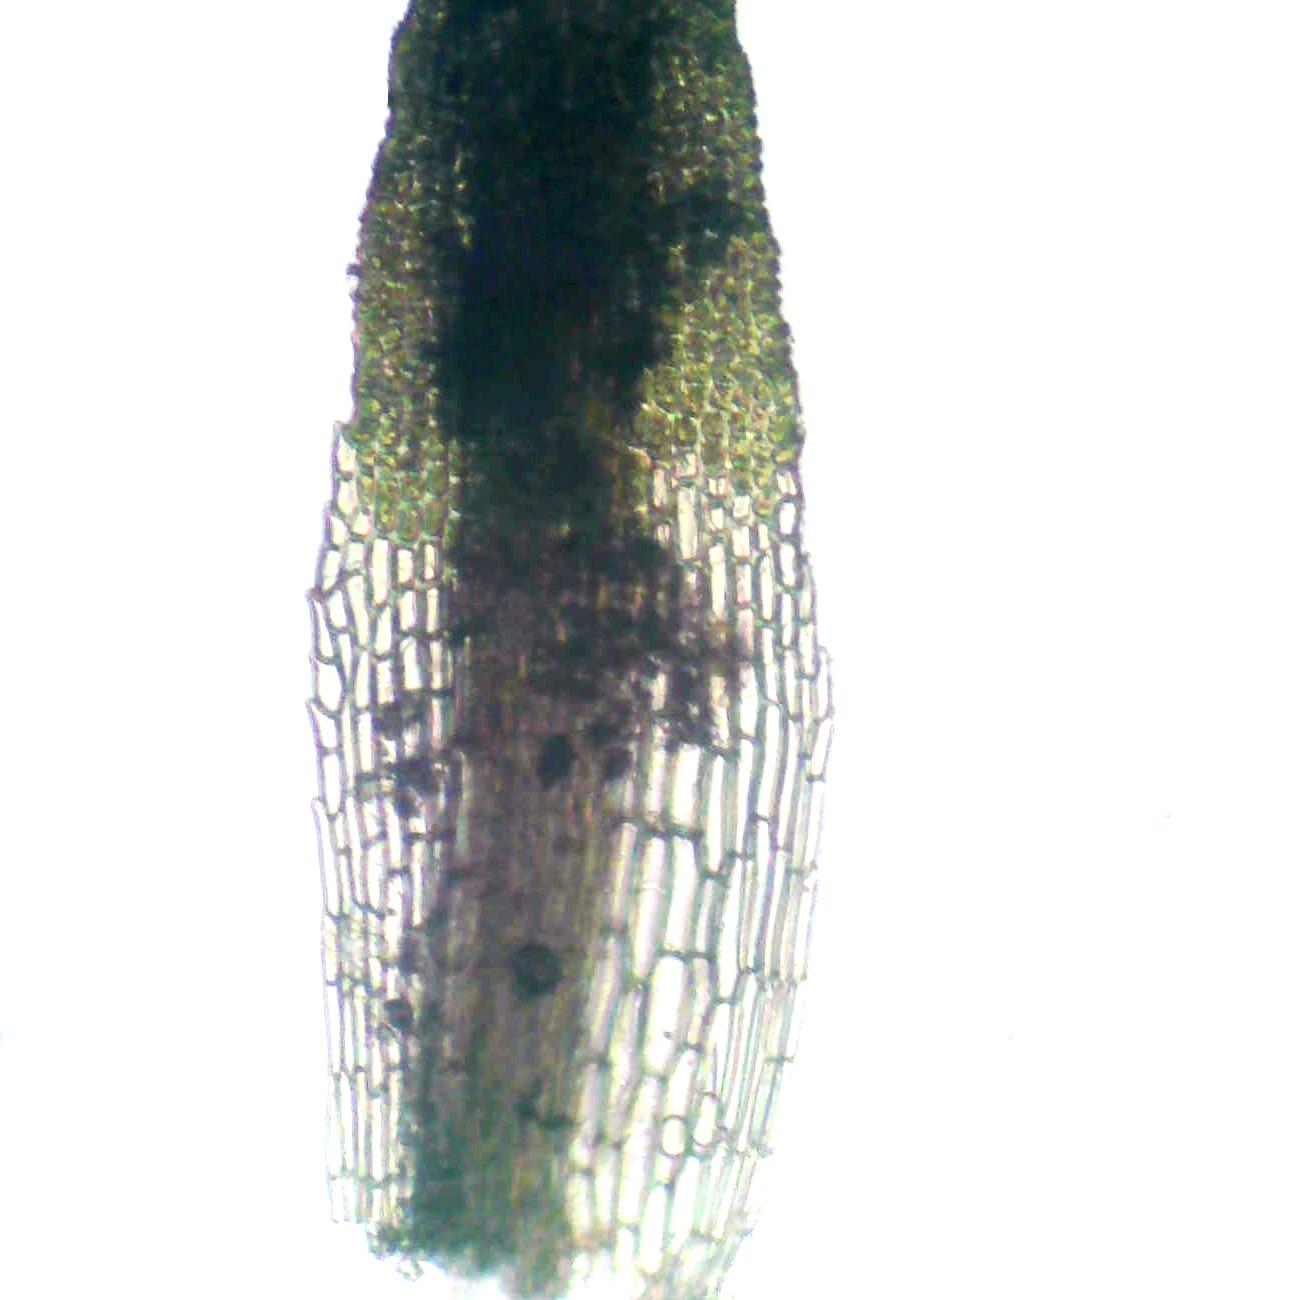 Eucladium  verticillatum